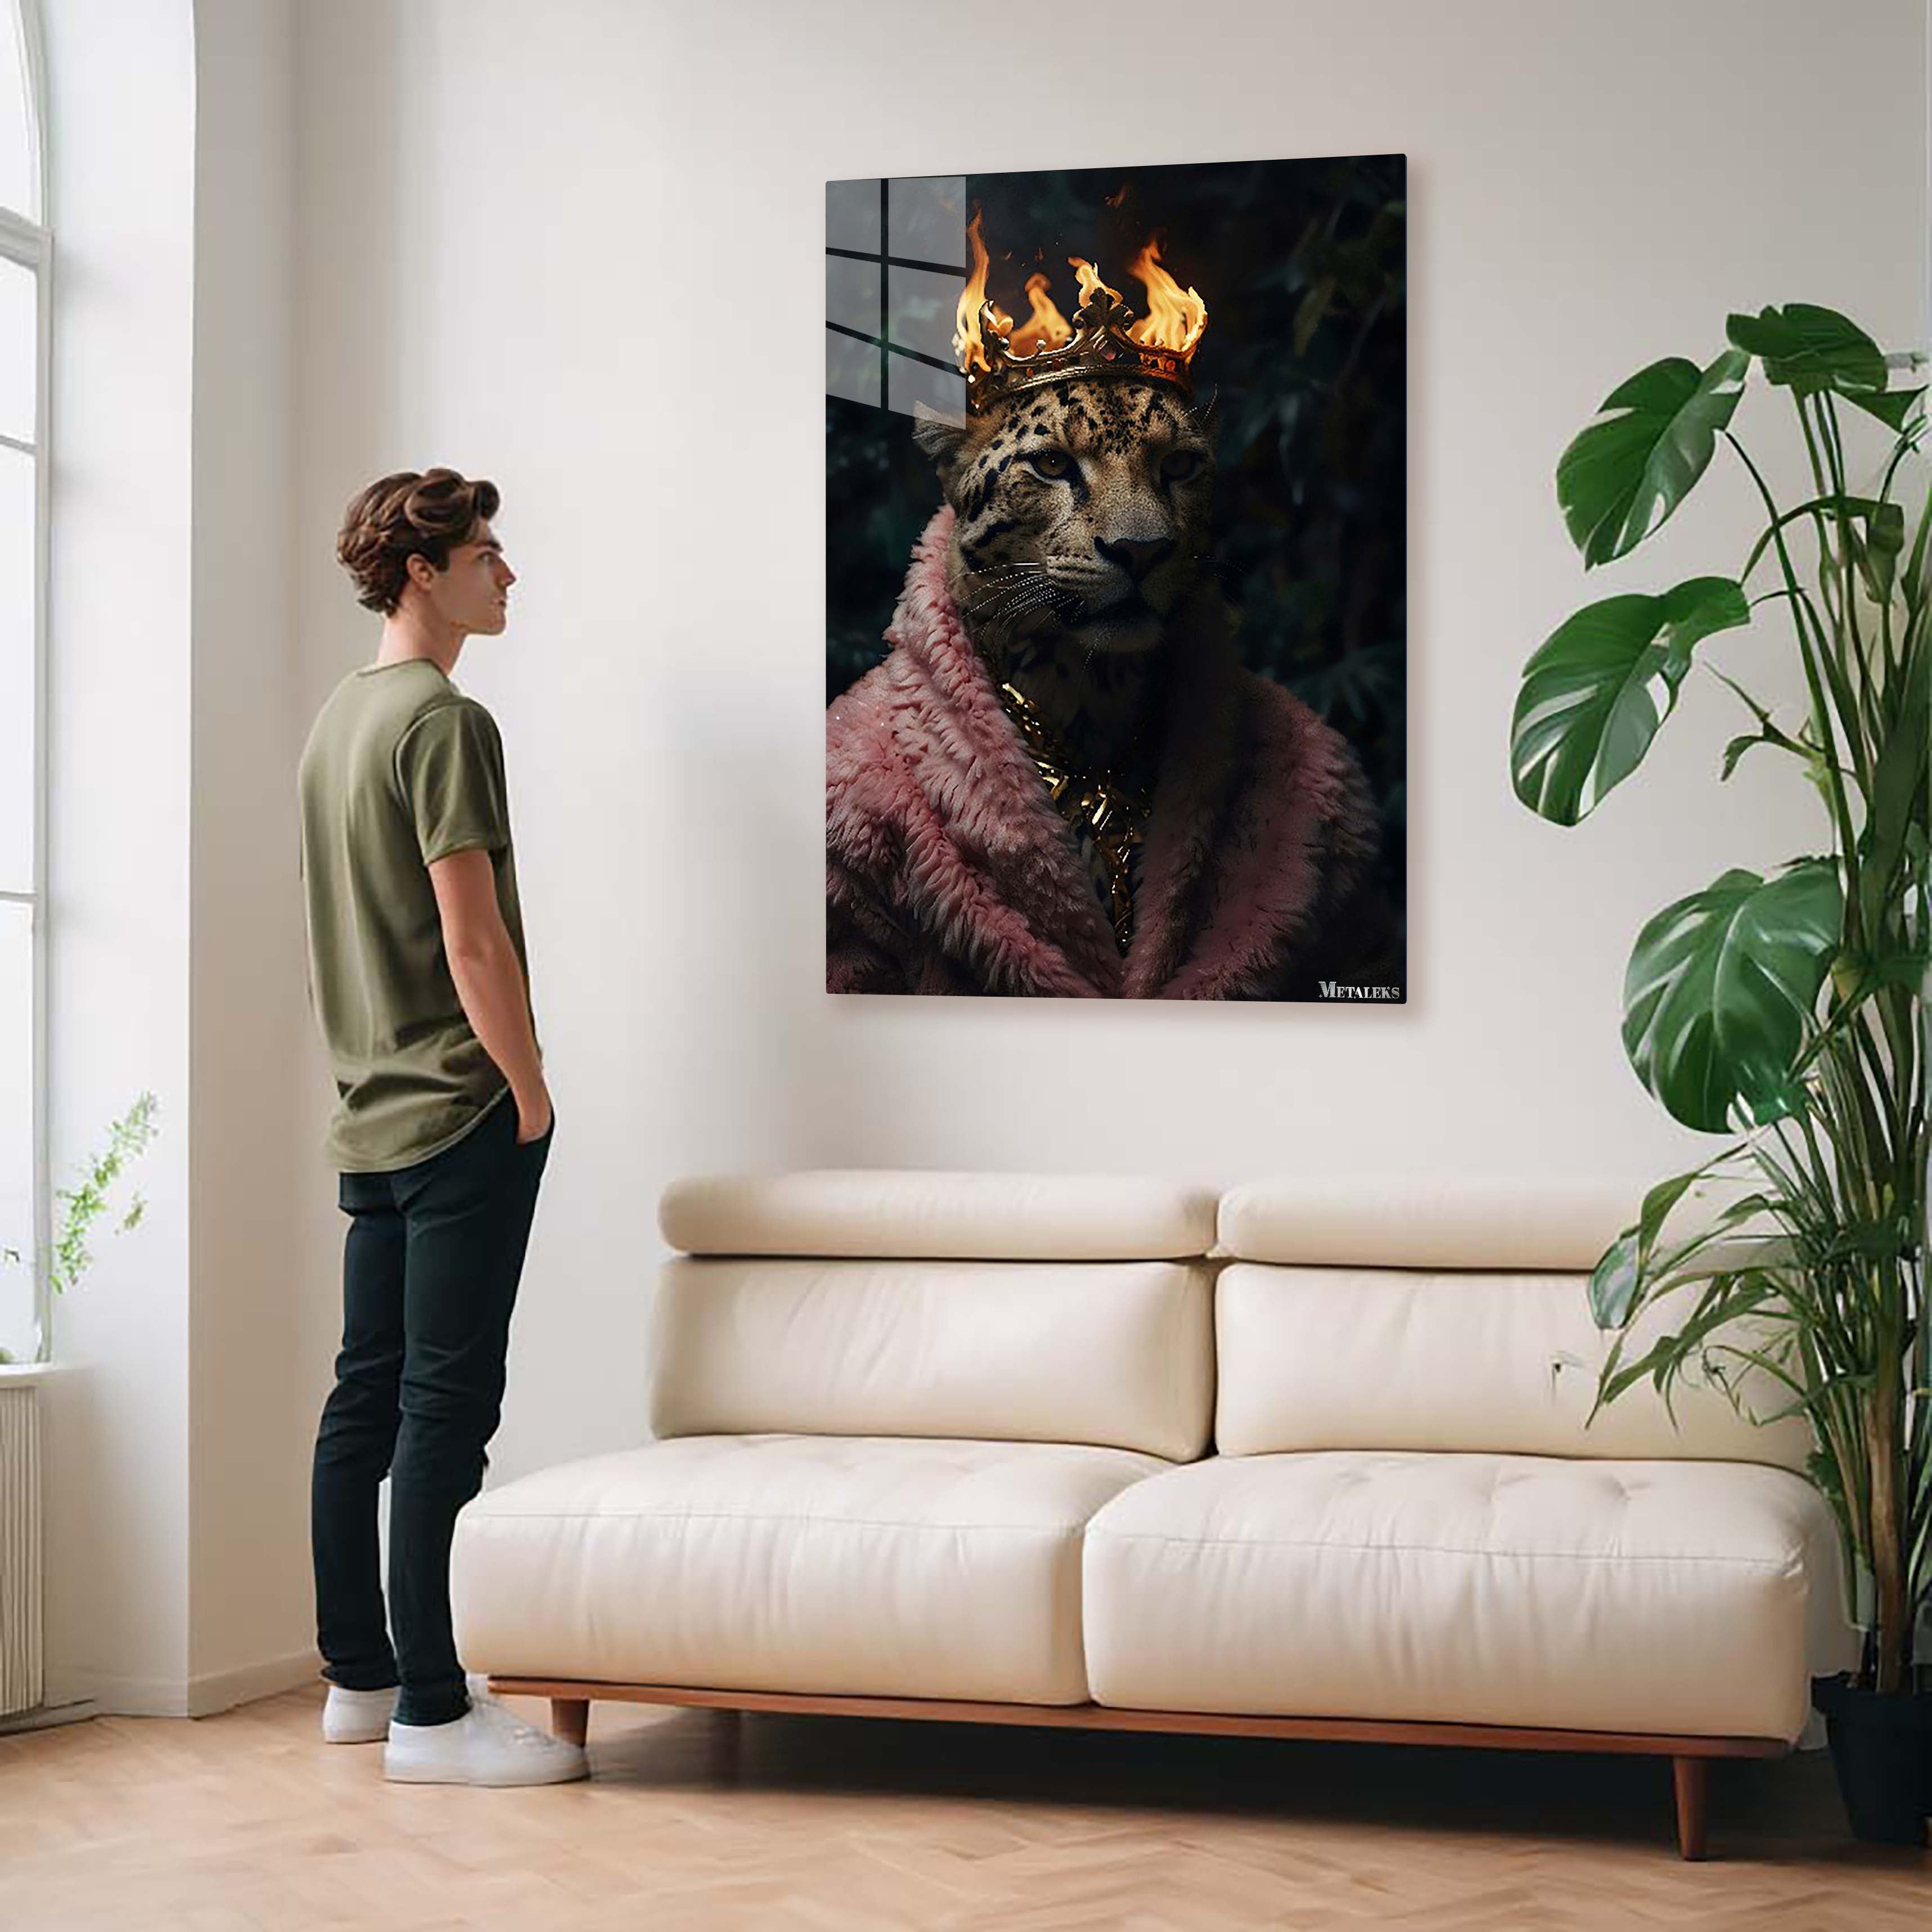 Leopard King wearing crown on fire-Artwork by @eralidigitalart